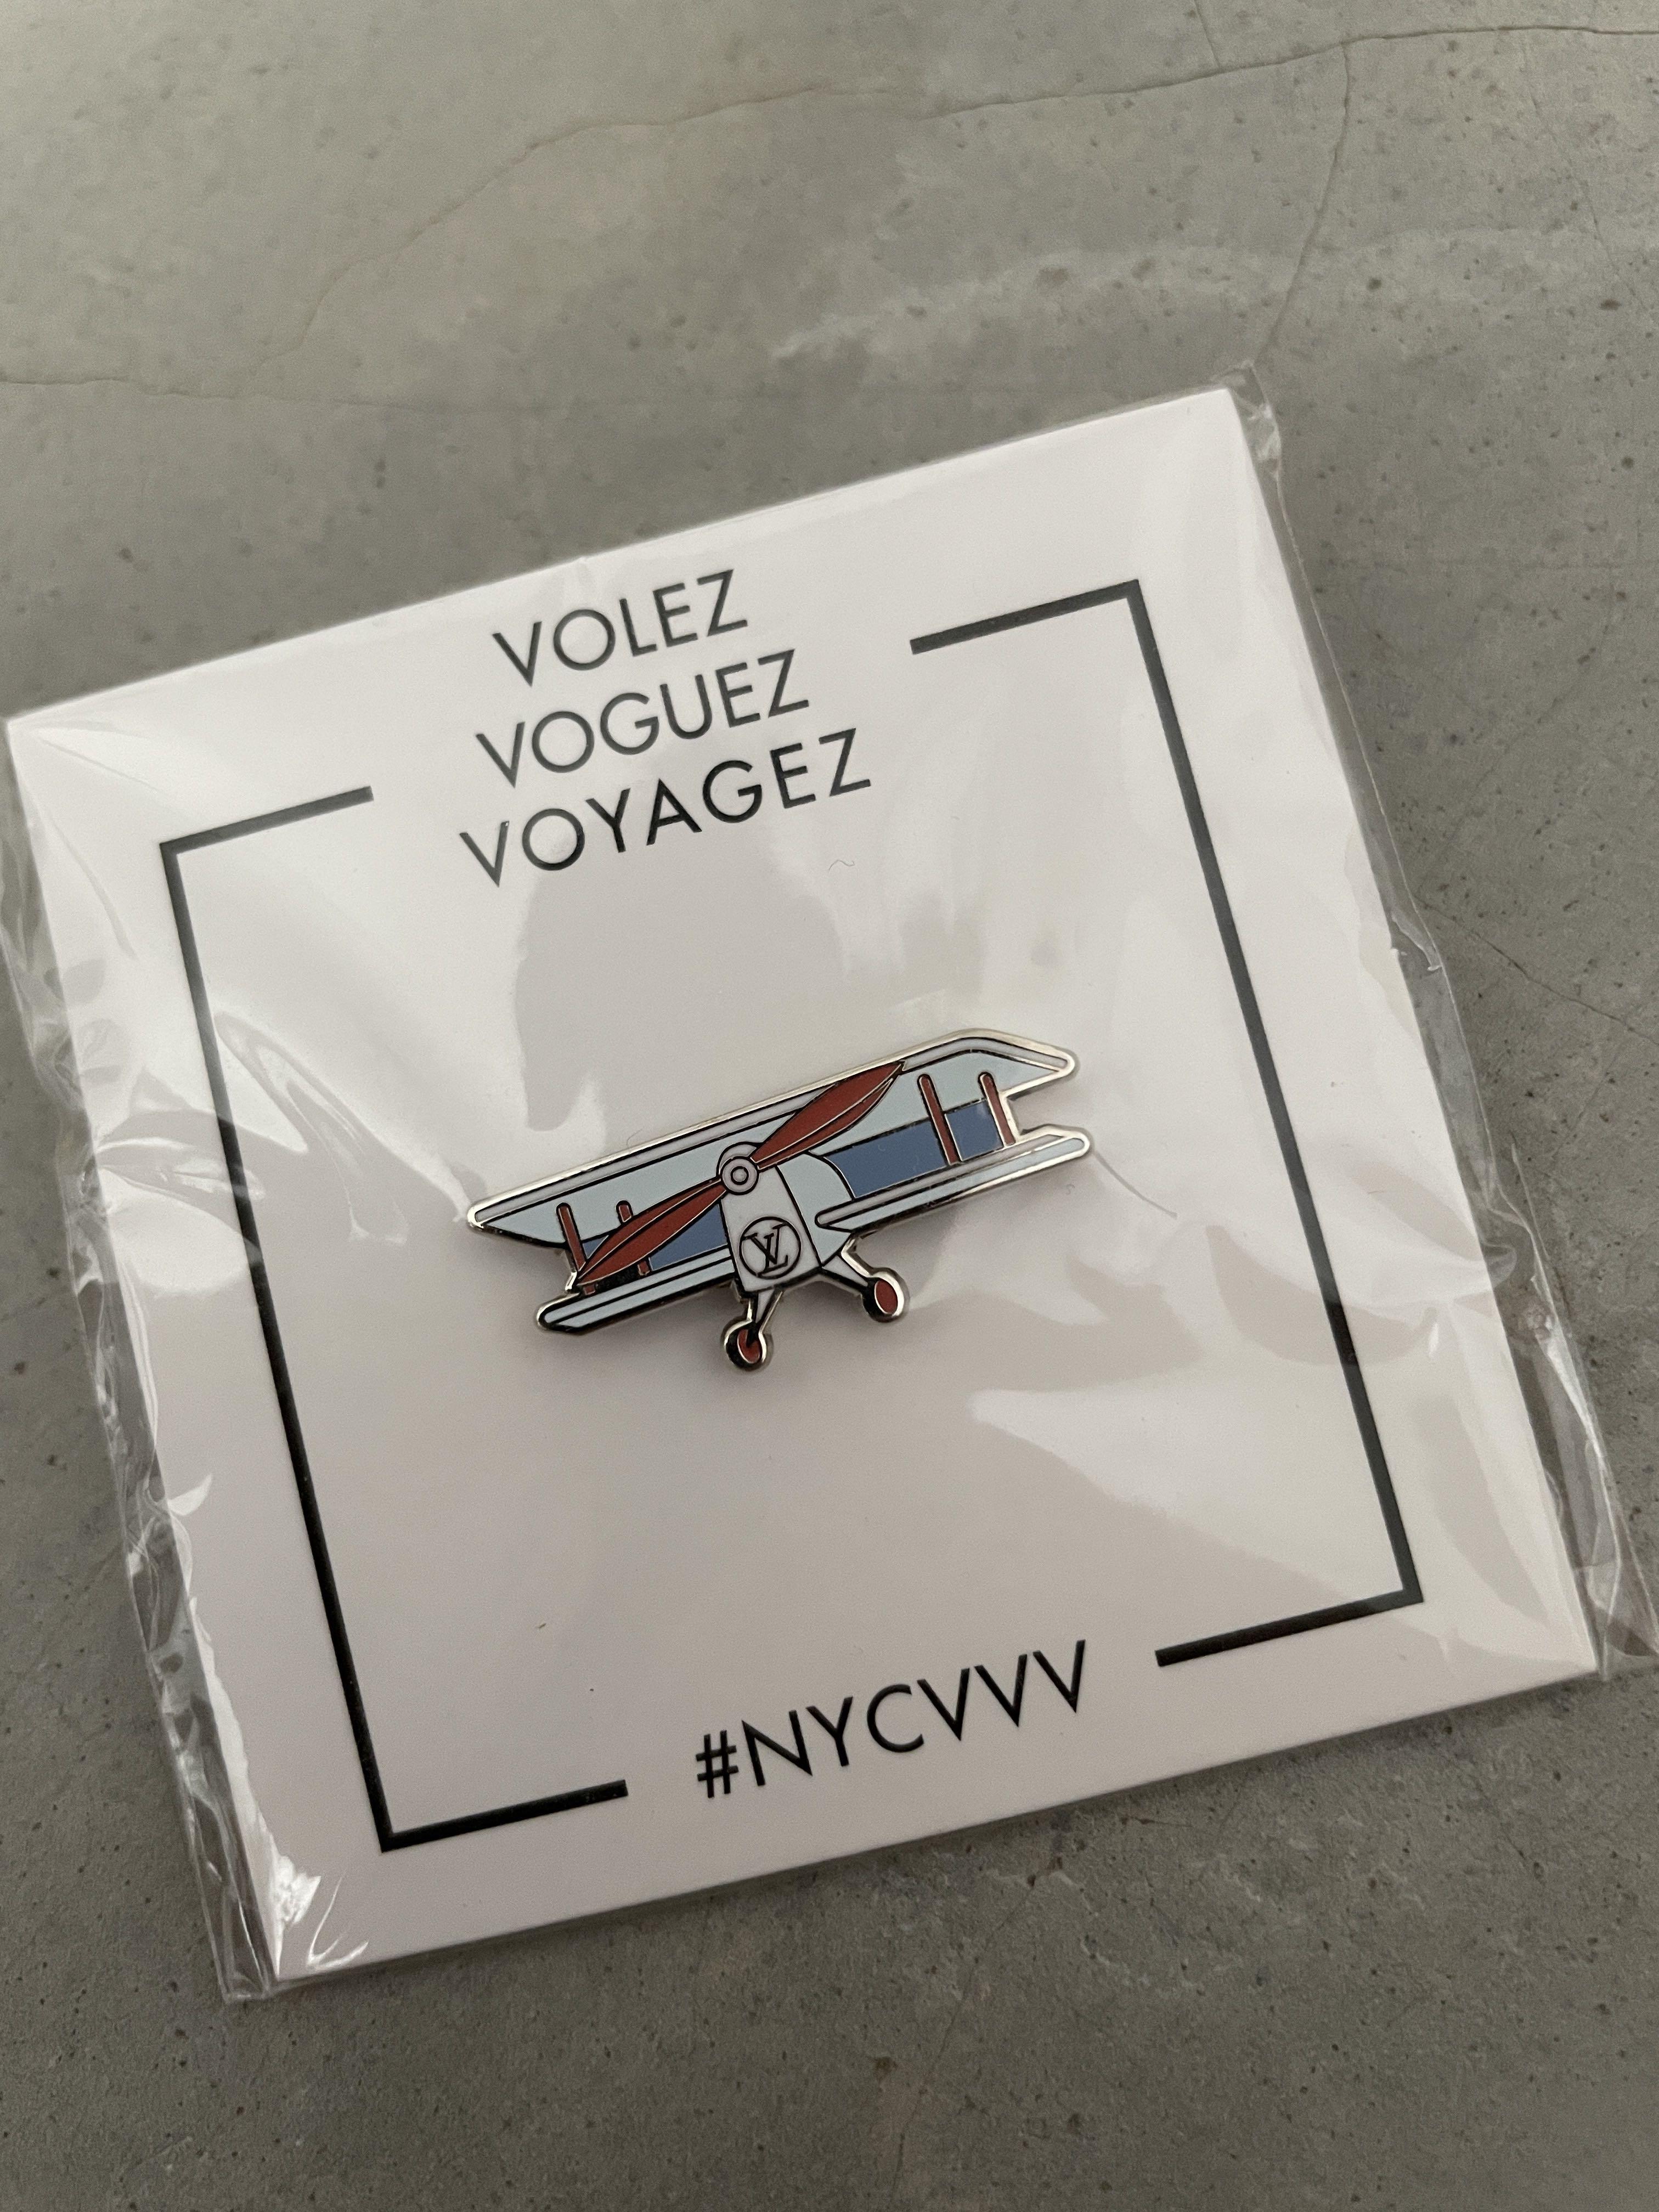 Louis Vuitton, Accessories, Louis Vuitton Exhibition Volez Voguez Voyagez  Pin